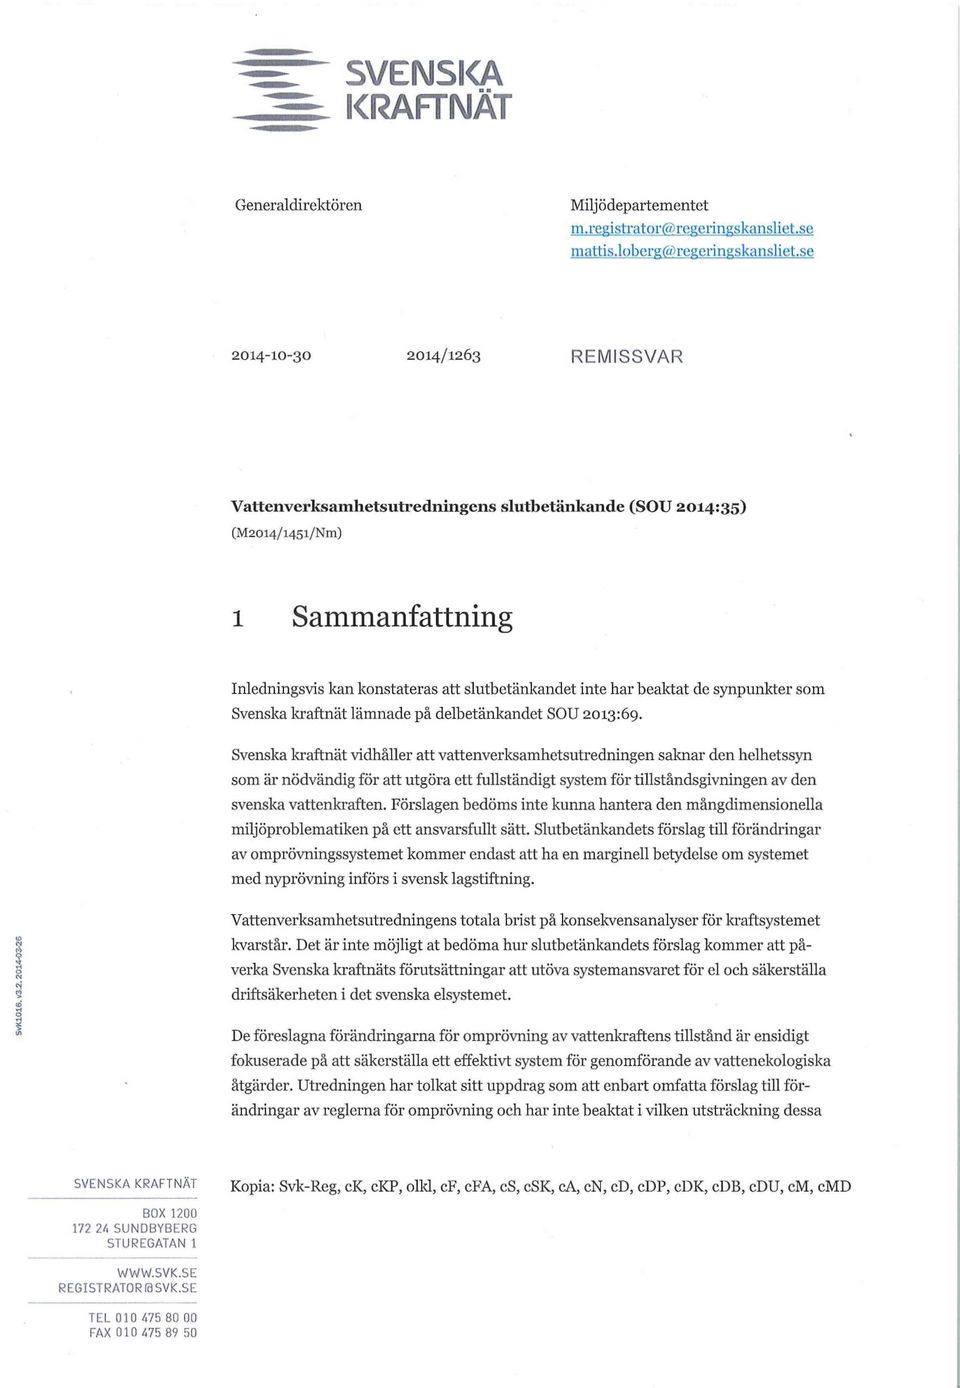 synpunkter som Svenska kraftnät lämnade på delbetänkandet SOU 2013:69.